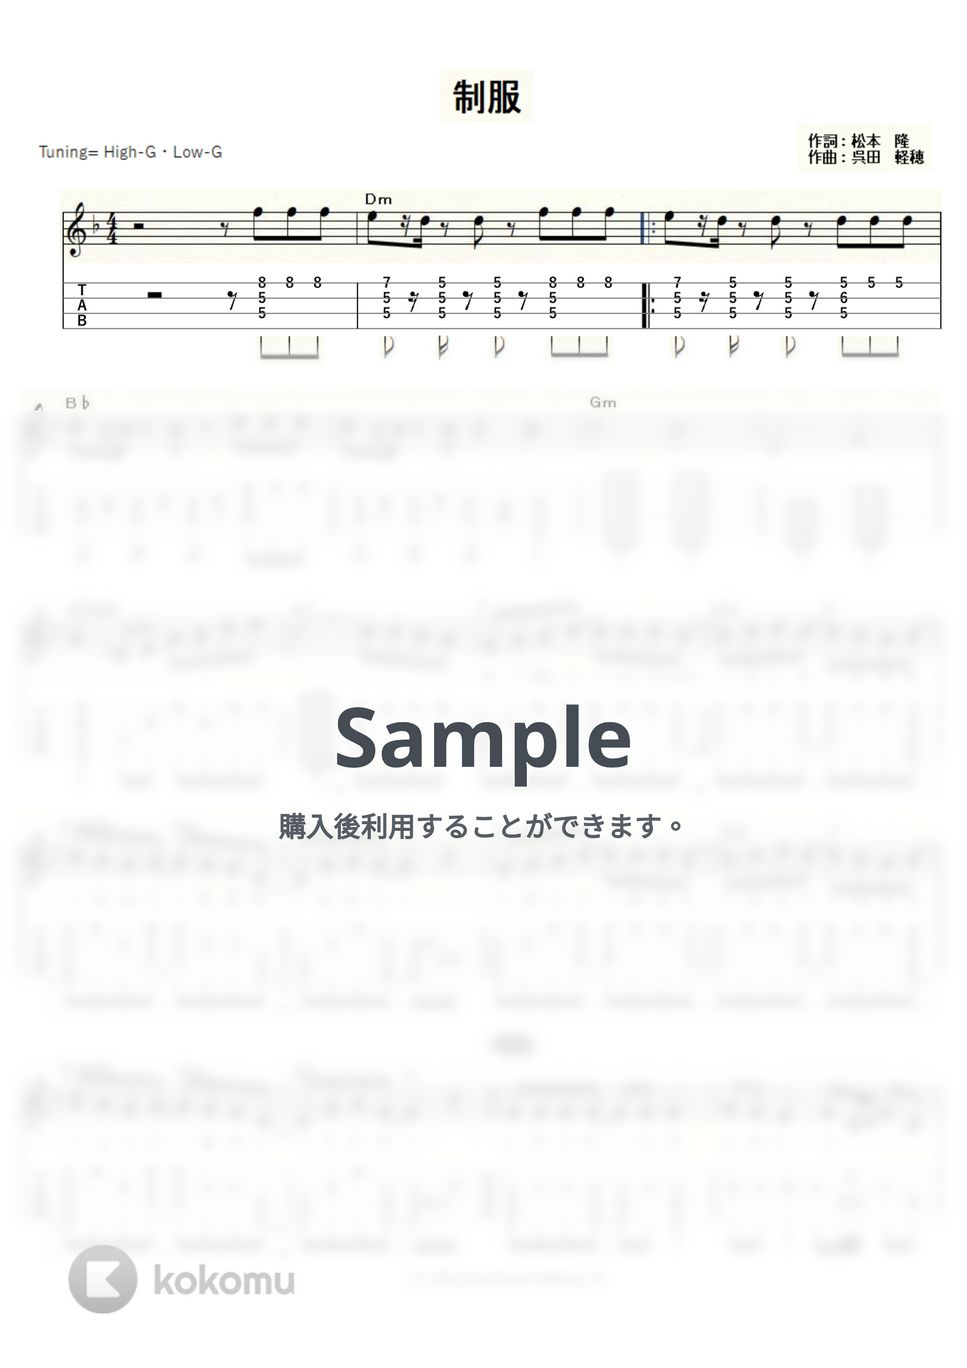 松田聖子 - 制服 (ｳｸﾚﾚｿﾛ/High-G・Low-G/中級) by ukulelepapa